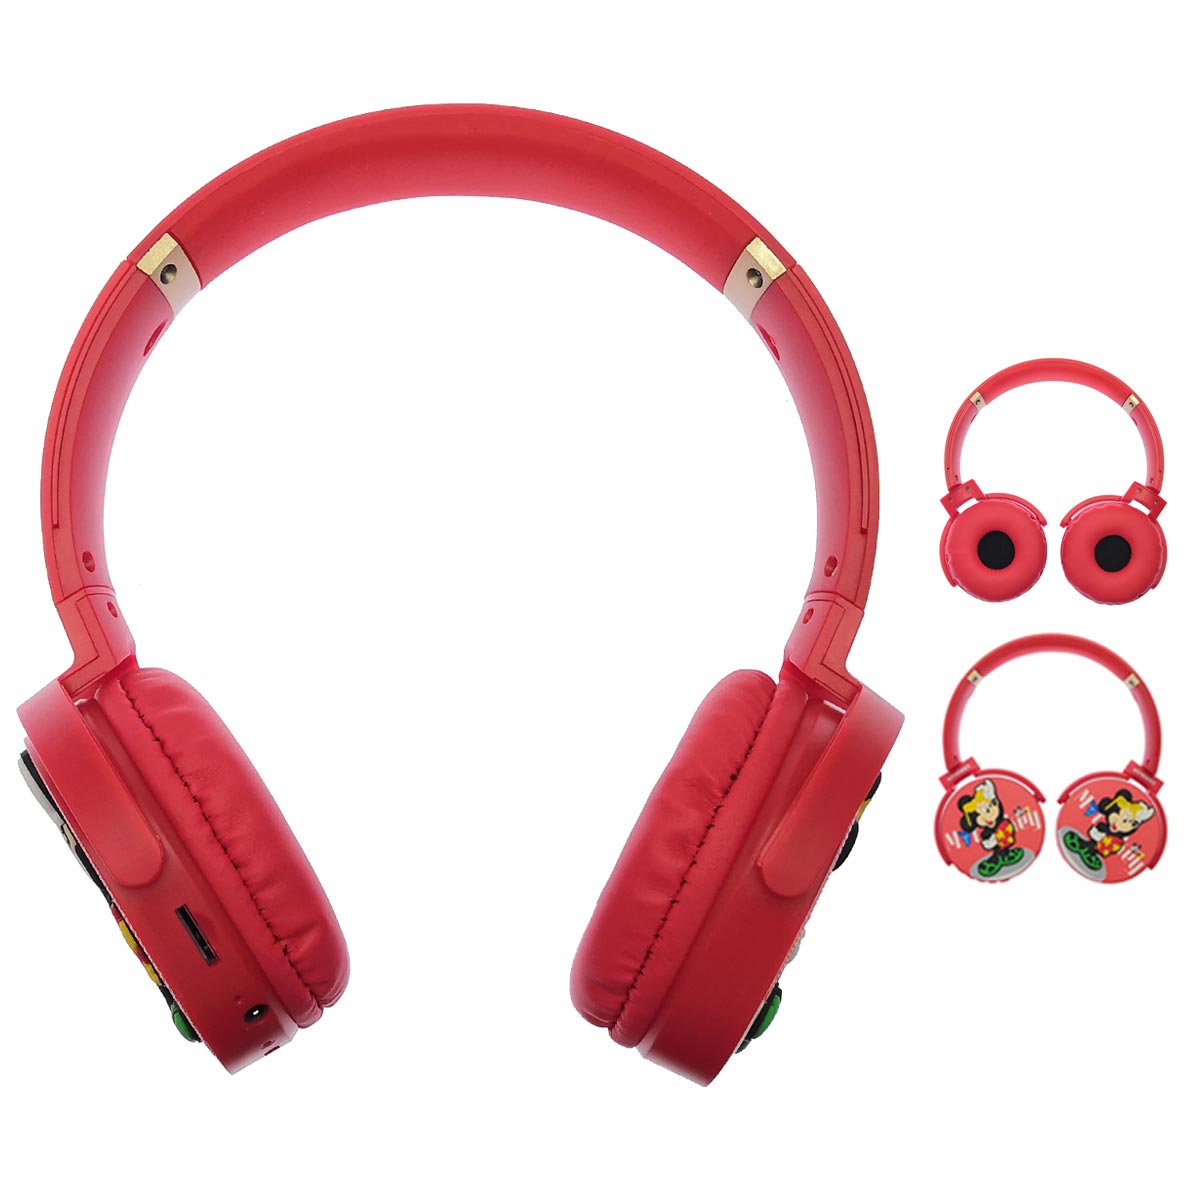 Гарнитура (наушники с микрофоном) беспроводная KR-6000, полноразмерная, рисунок Mickey Mouse, цвет красный